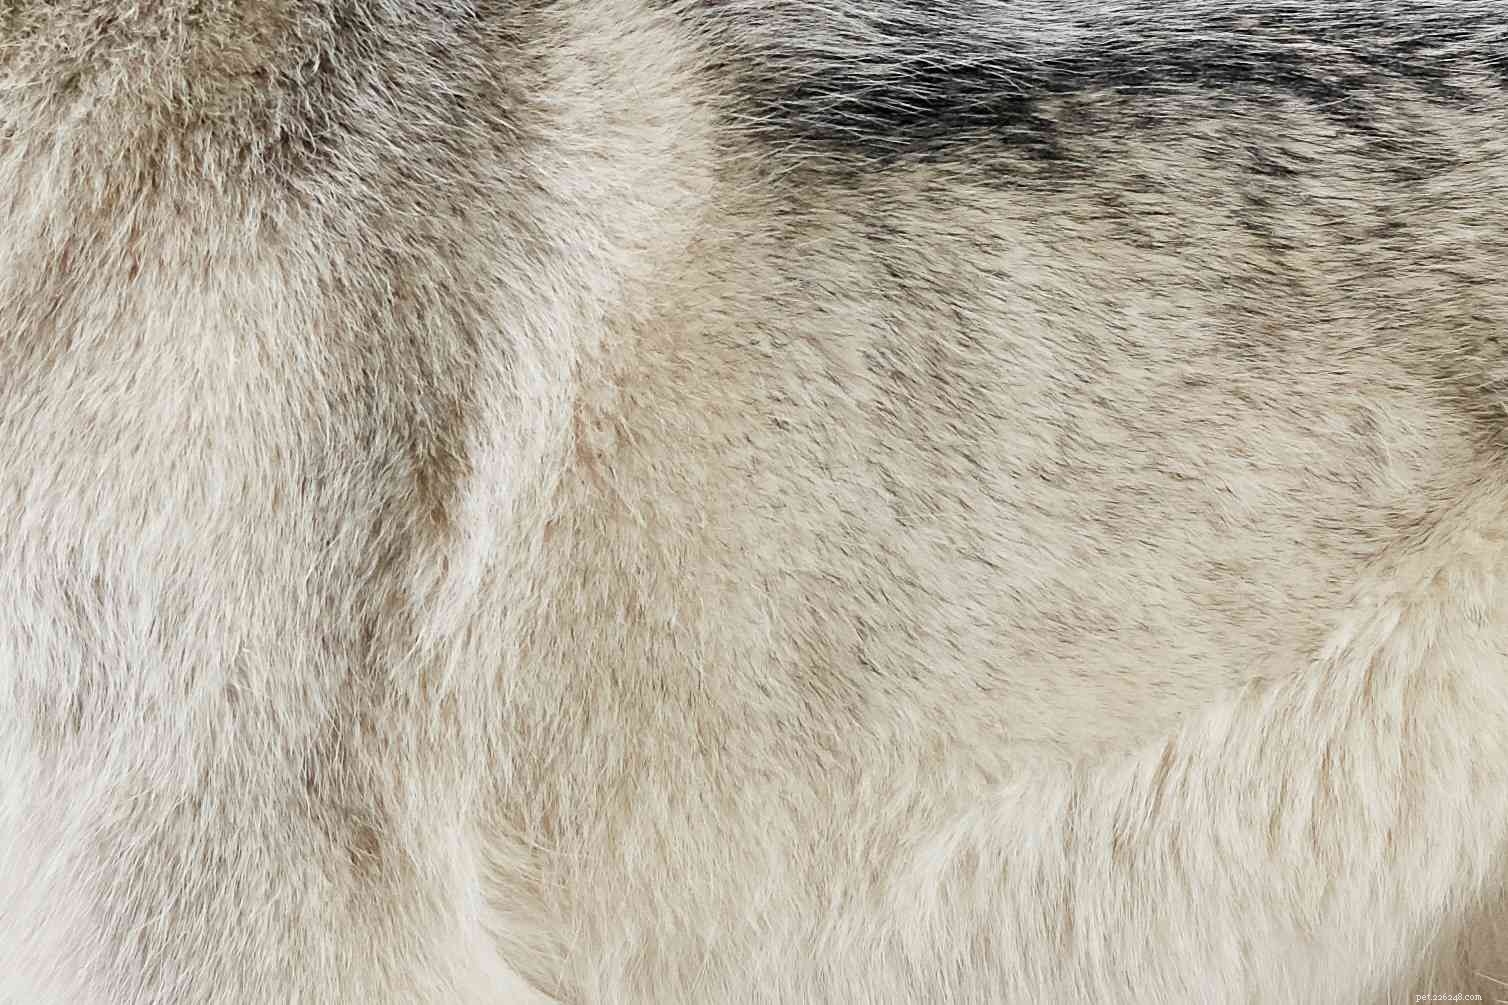 Siberian Husky:Hundras egenskaper och skötsel